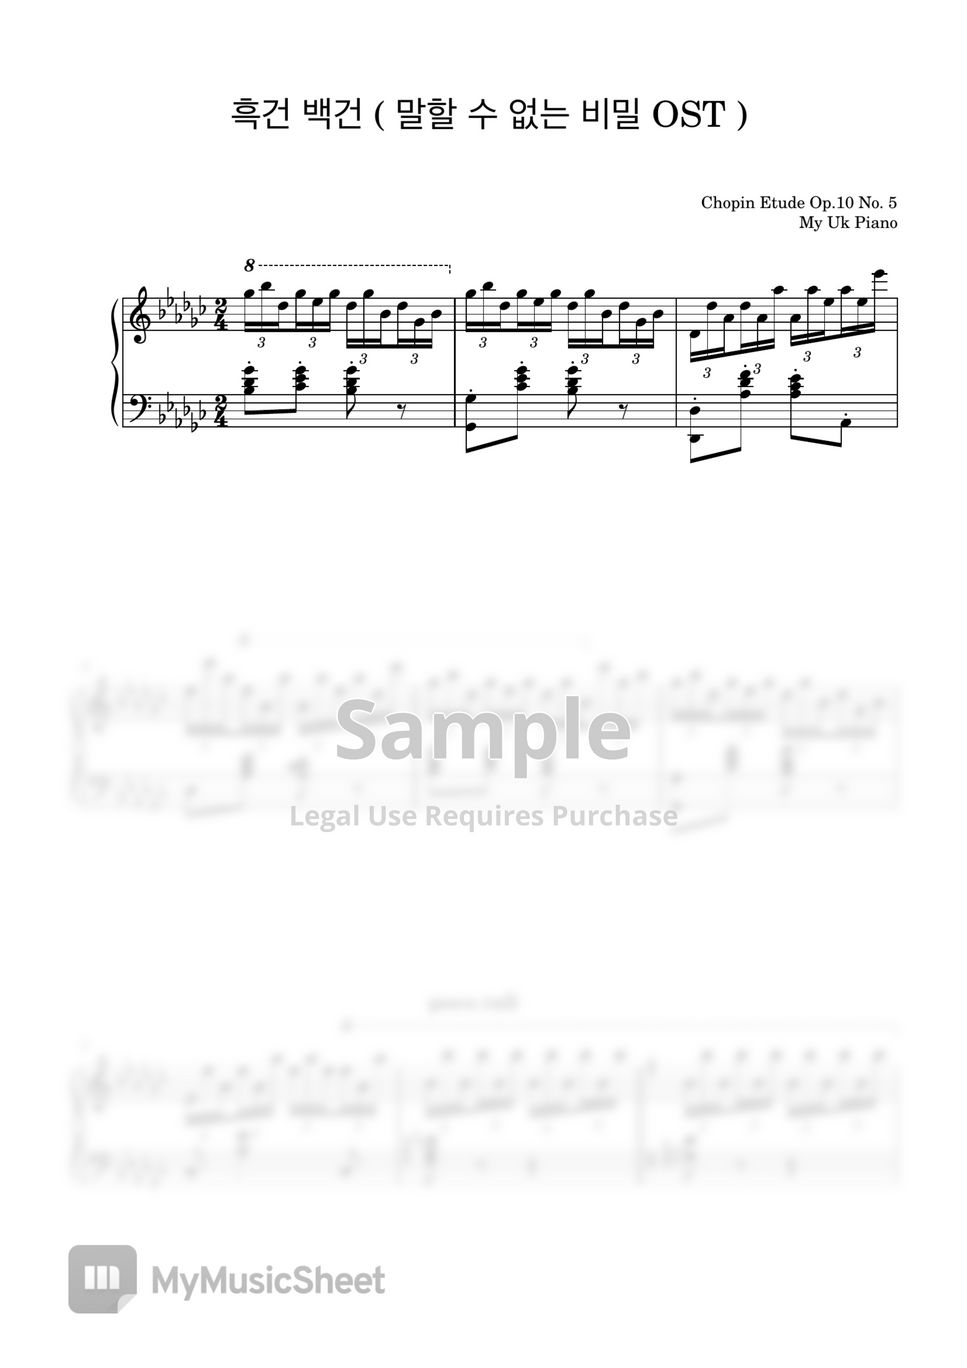 말할 수 없는 비밀 OST - 말할 수 없는 비밀 OST (흑건 백건) (쉬운악보, 계이름악보) by My Uk Piano